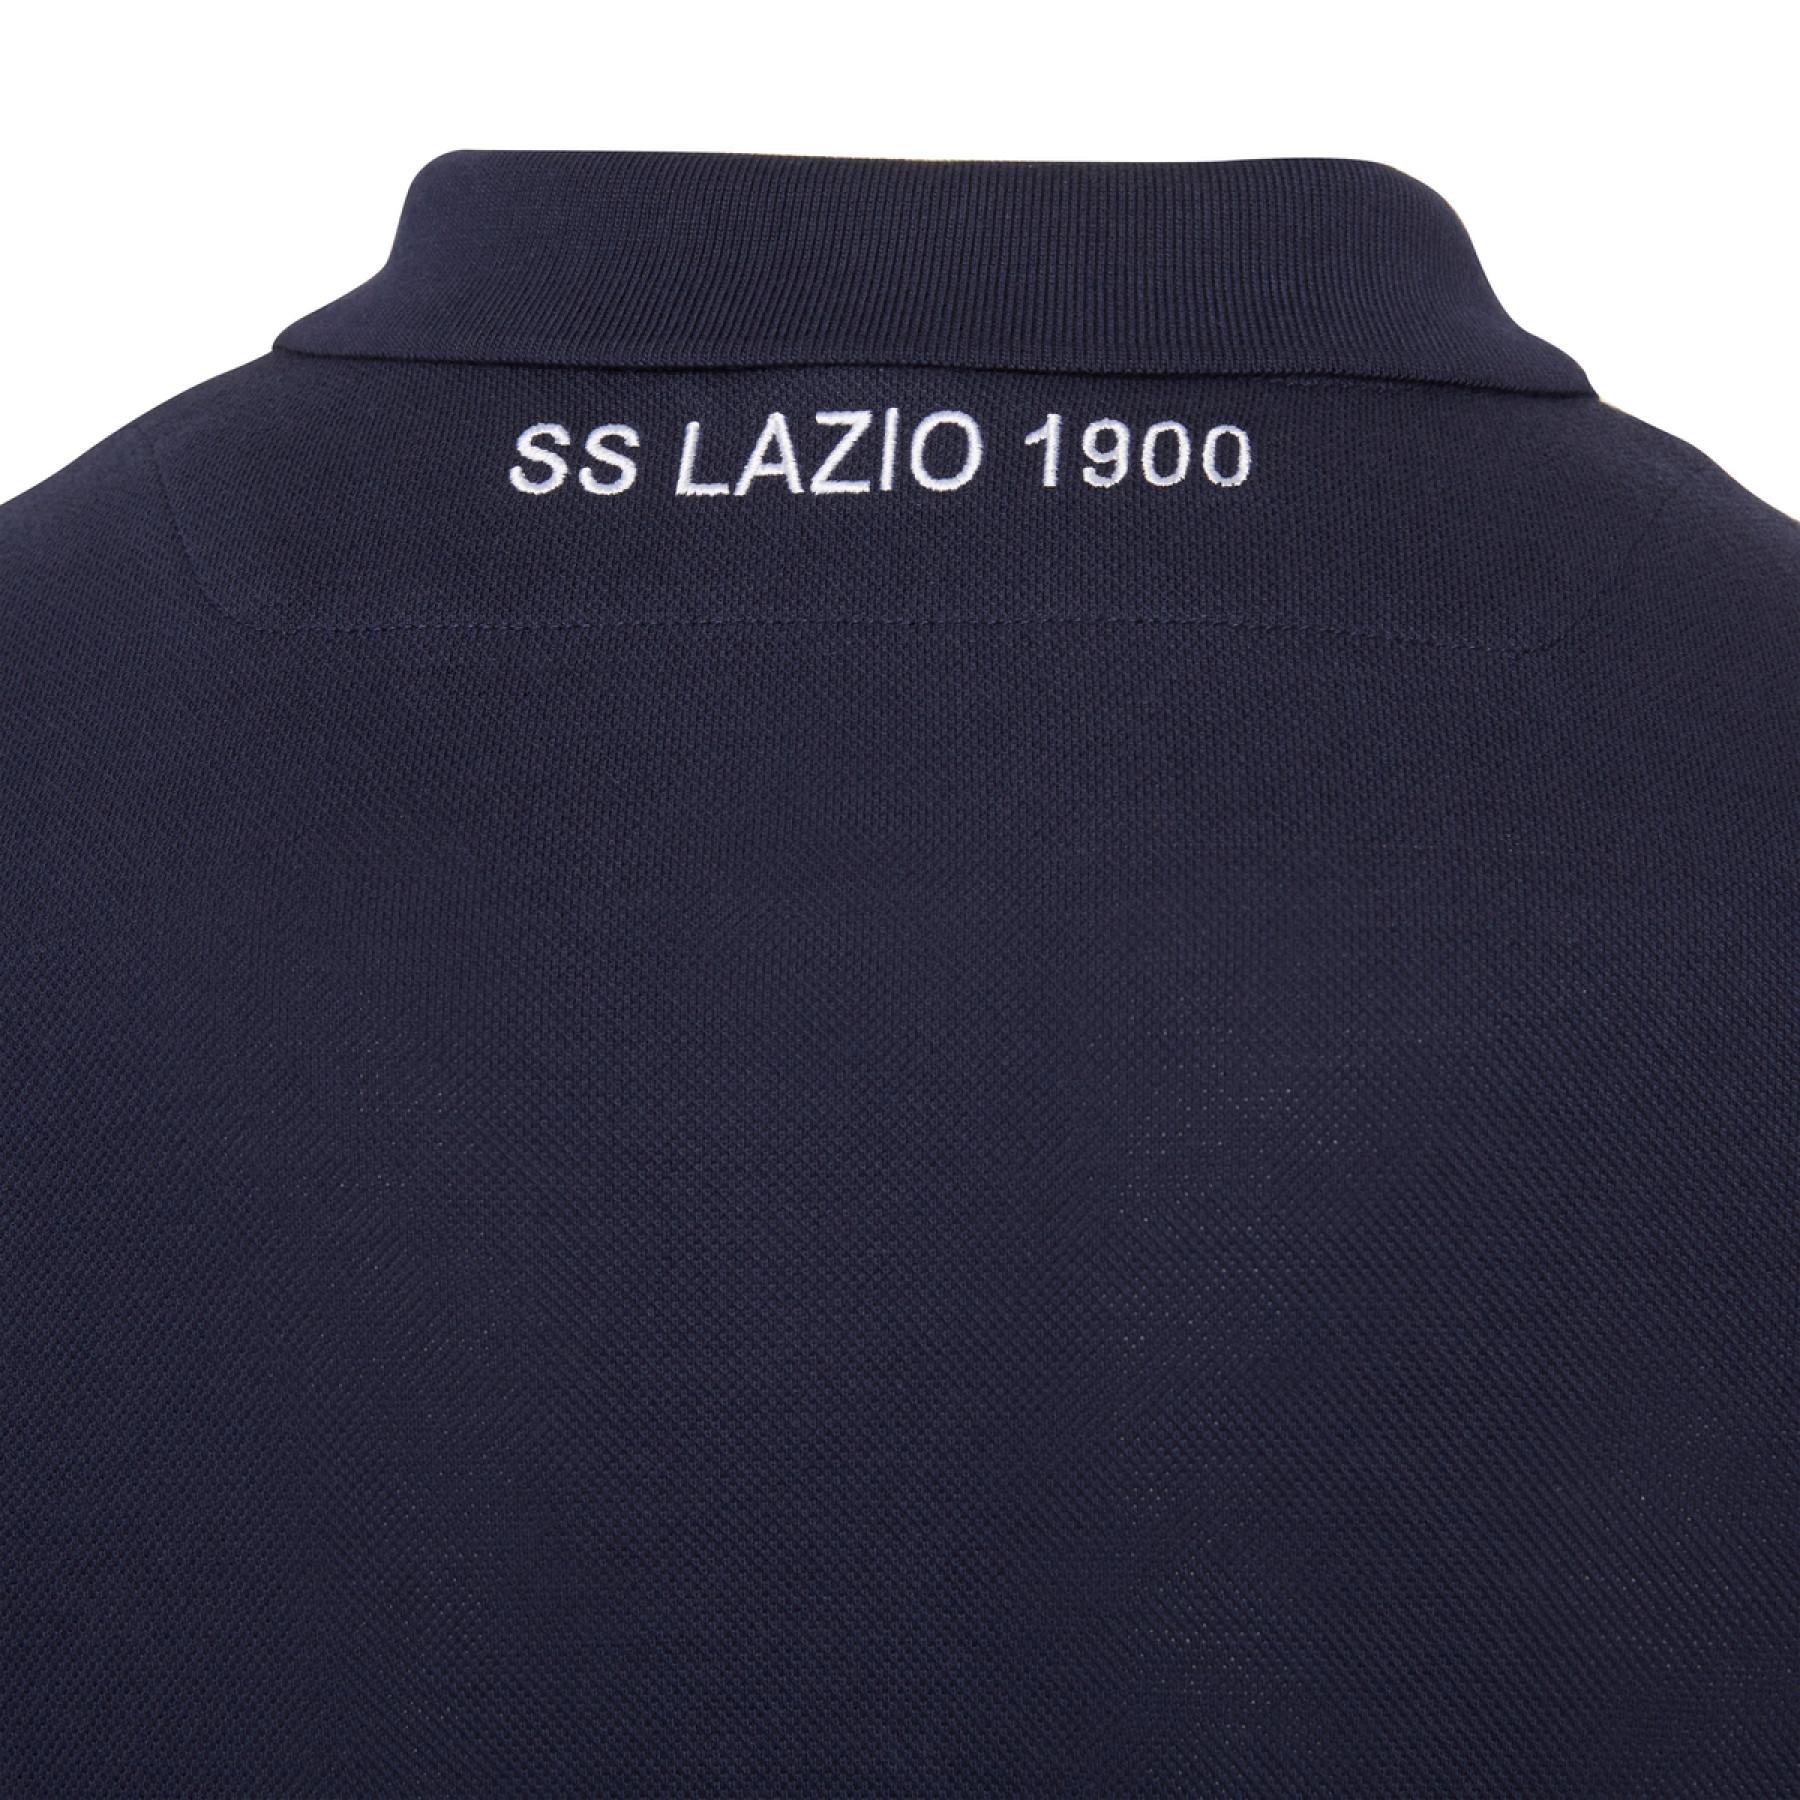 Pólo Lazio Rome style coton 2020/21